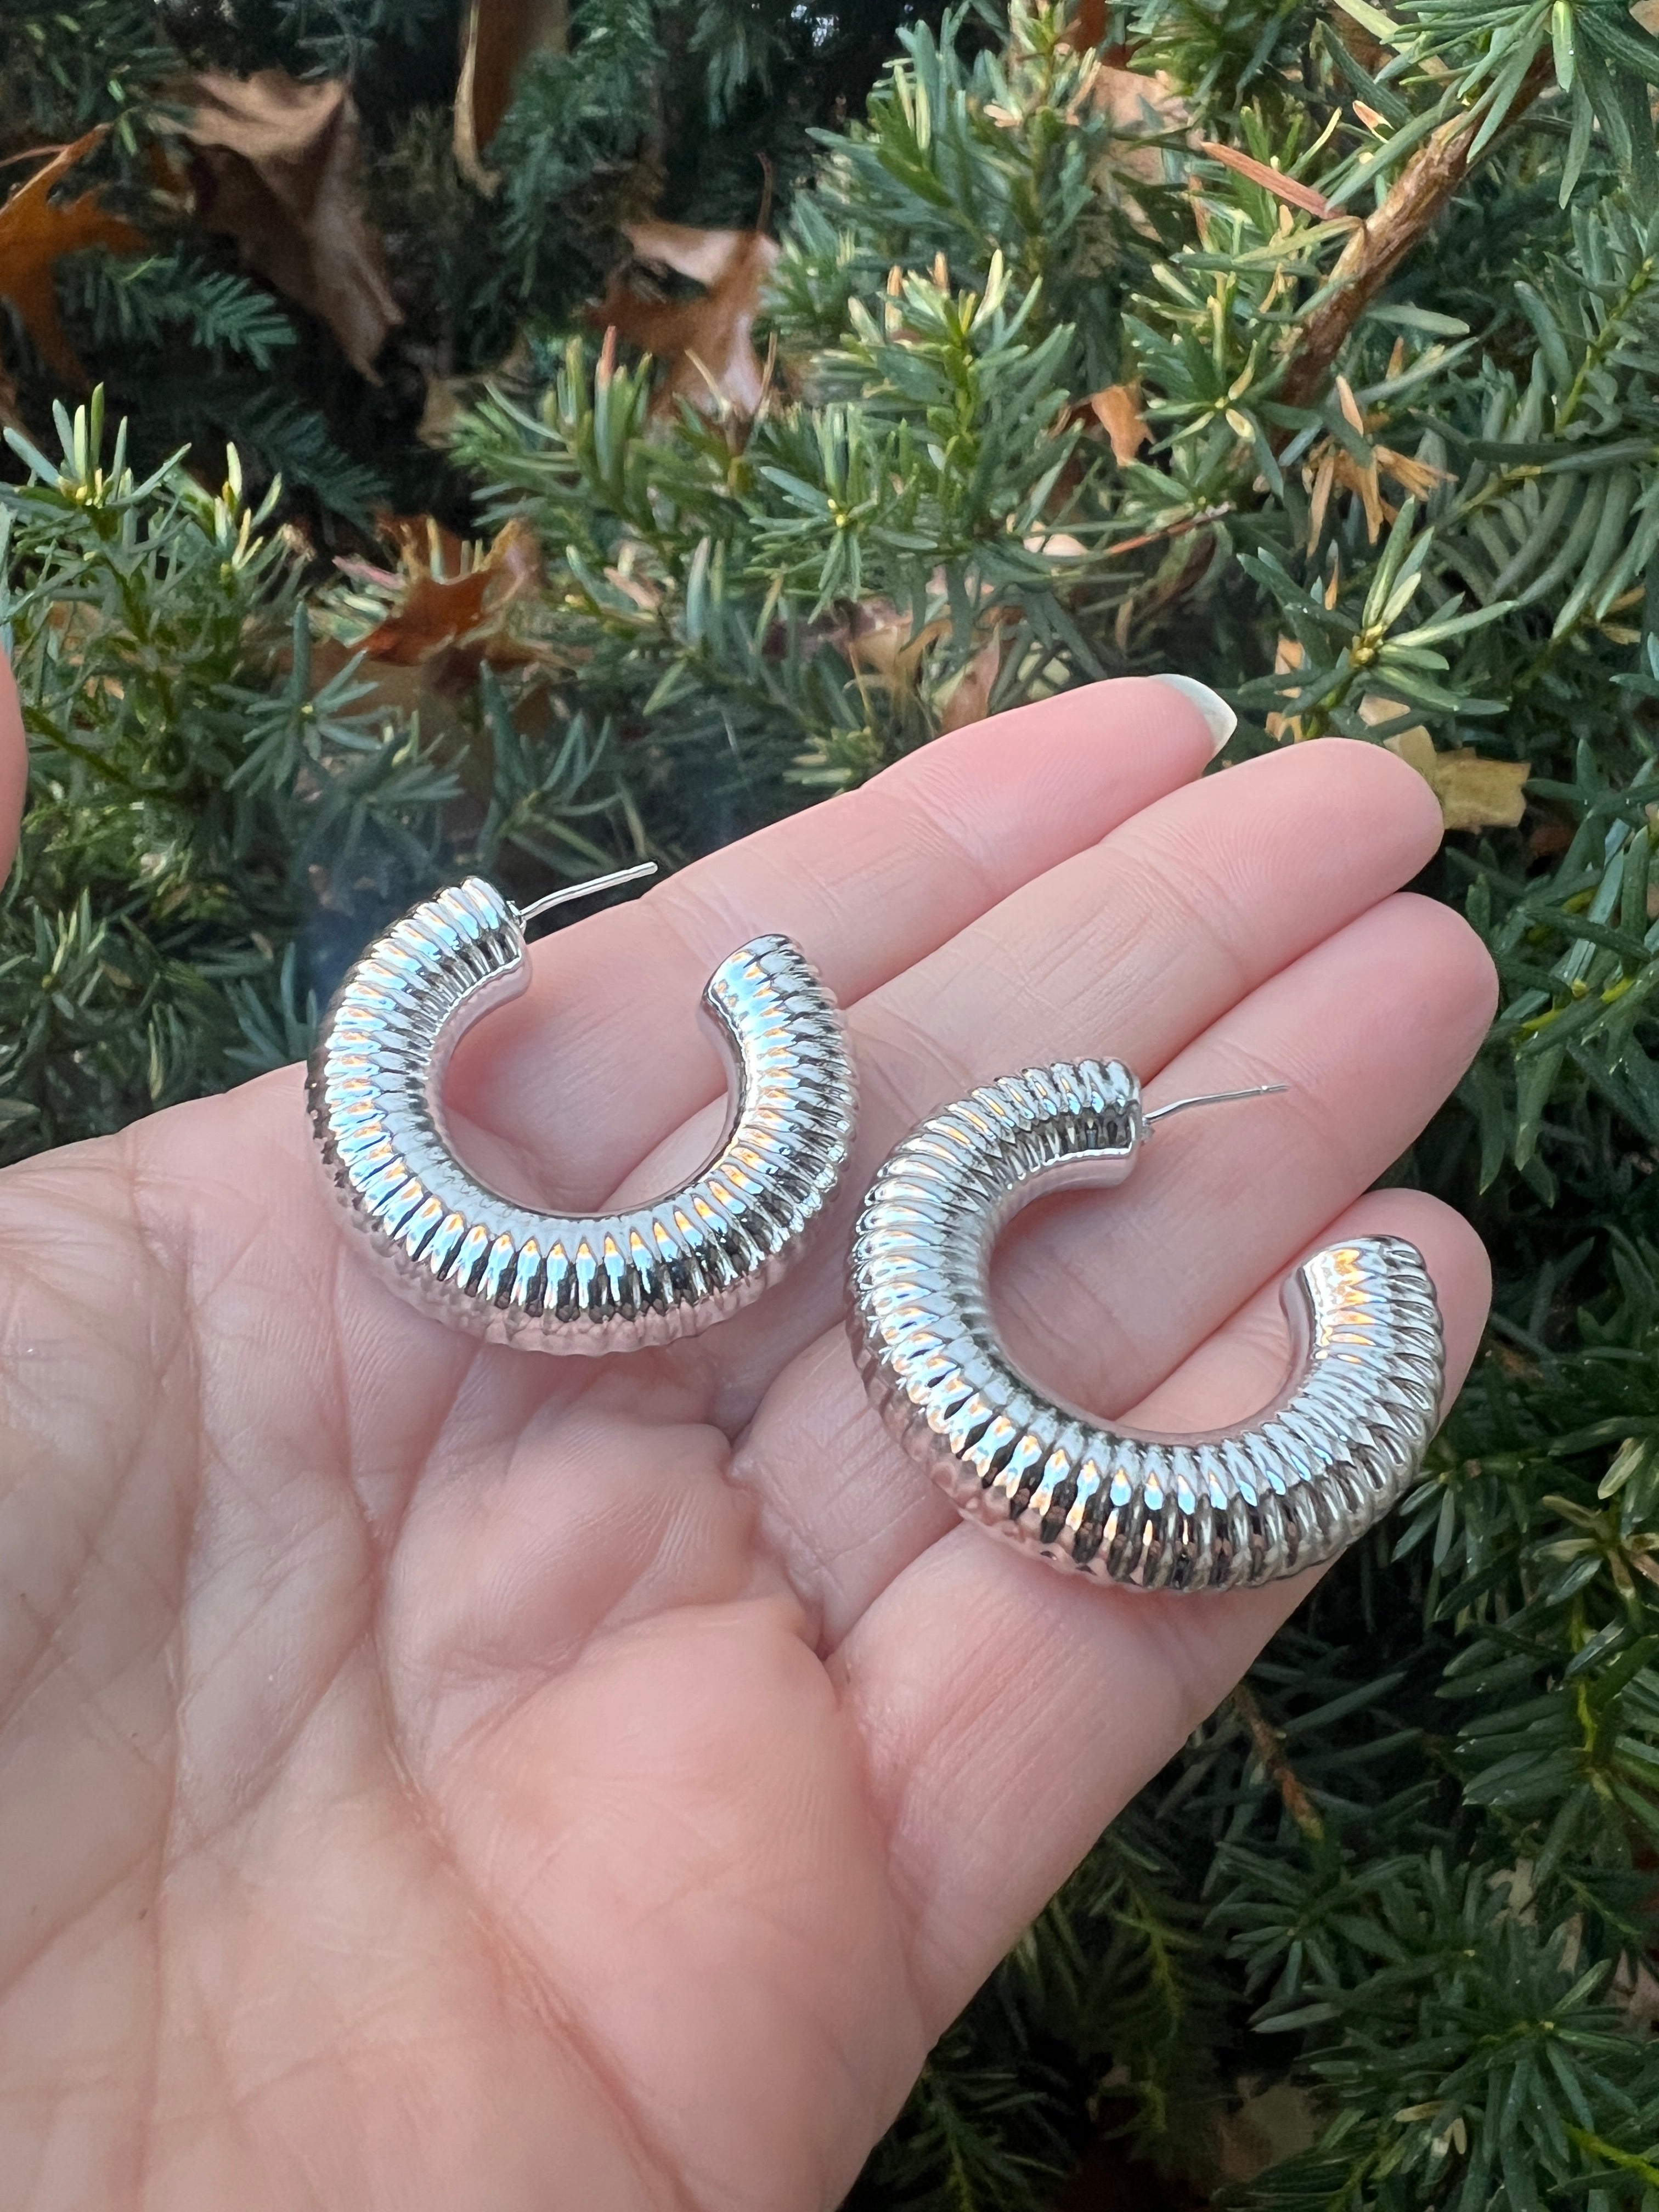 Silver Chrome Acrylic Hoop Earrings